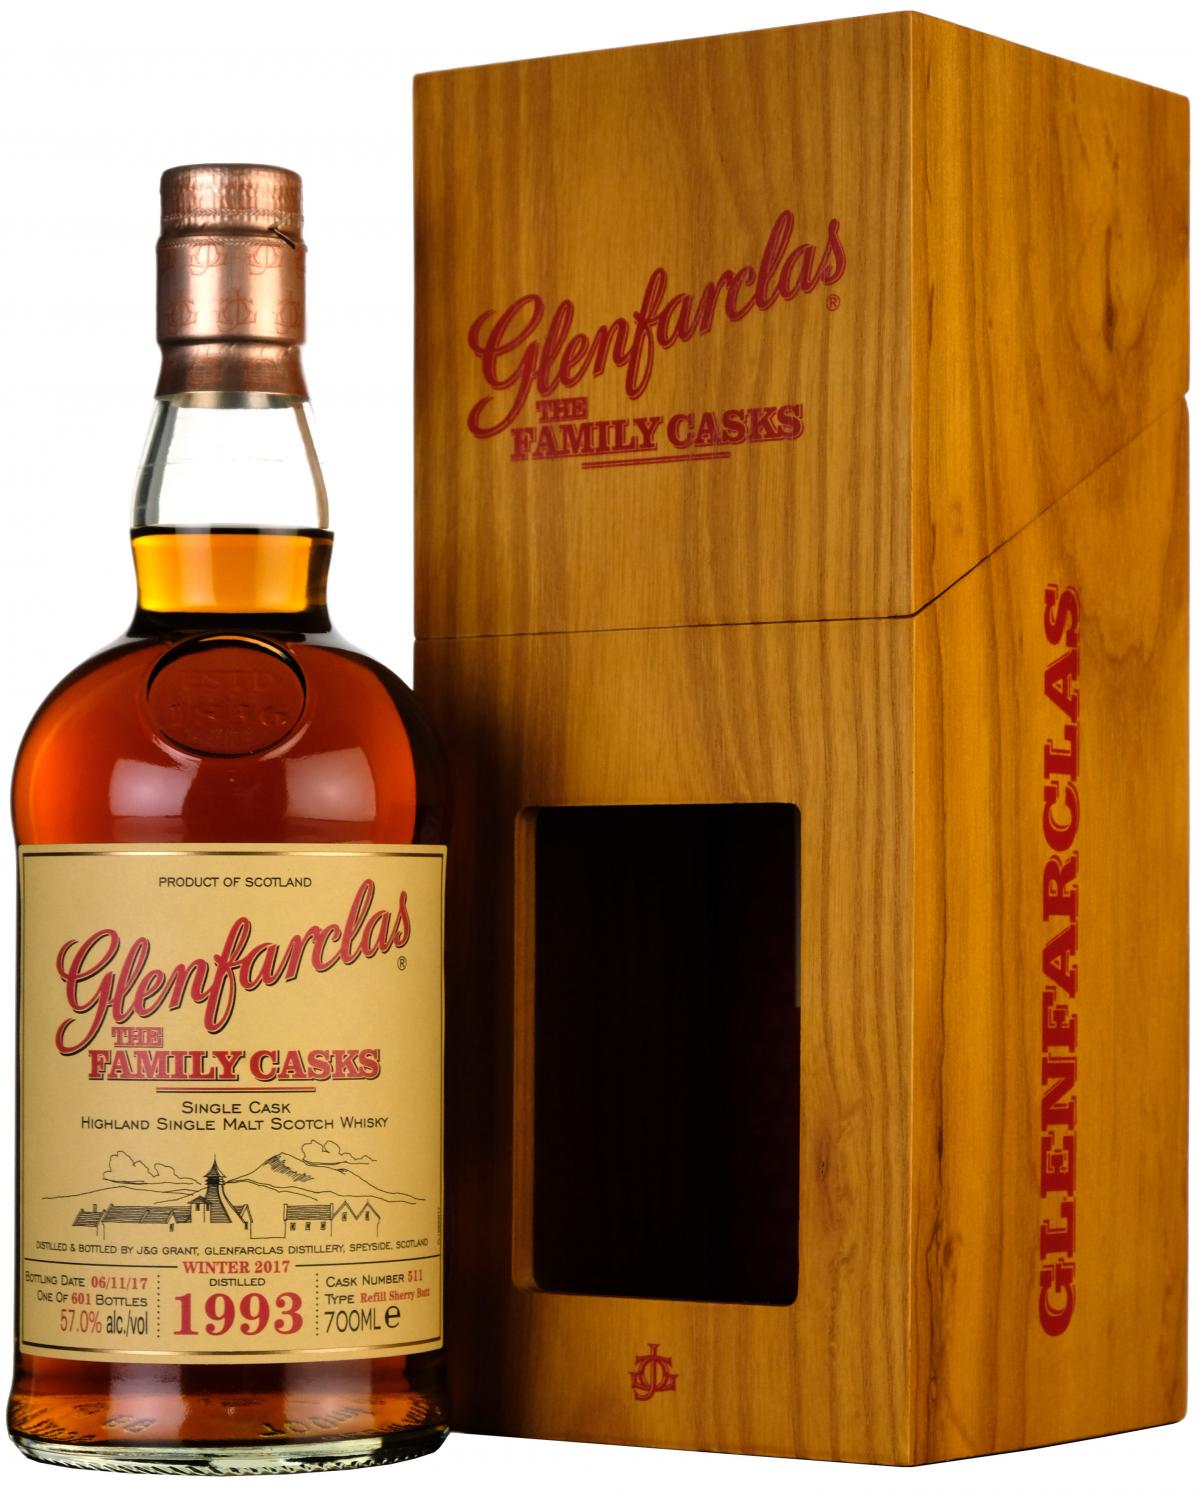 glenfarclas 1993, the family cask 511, speyside single malt scotch whisky